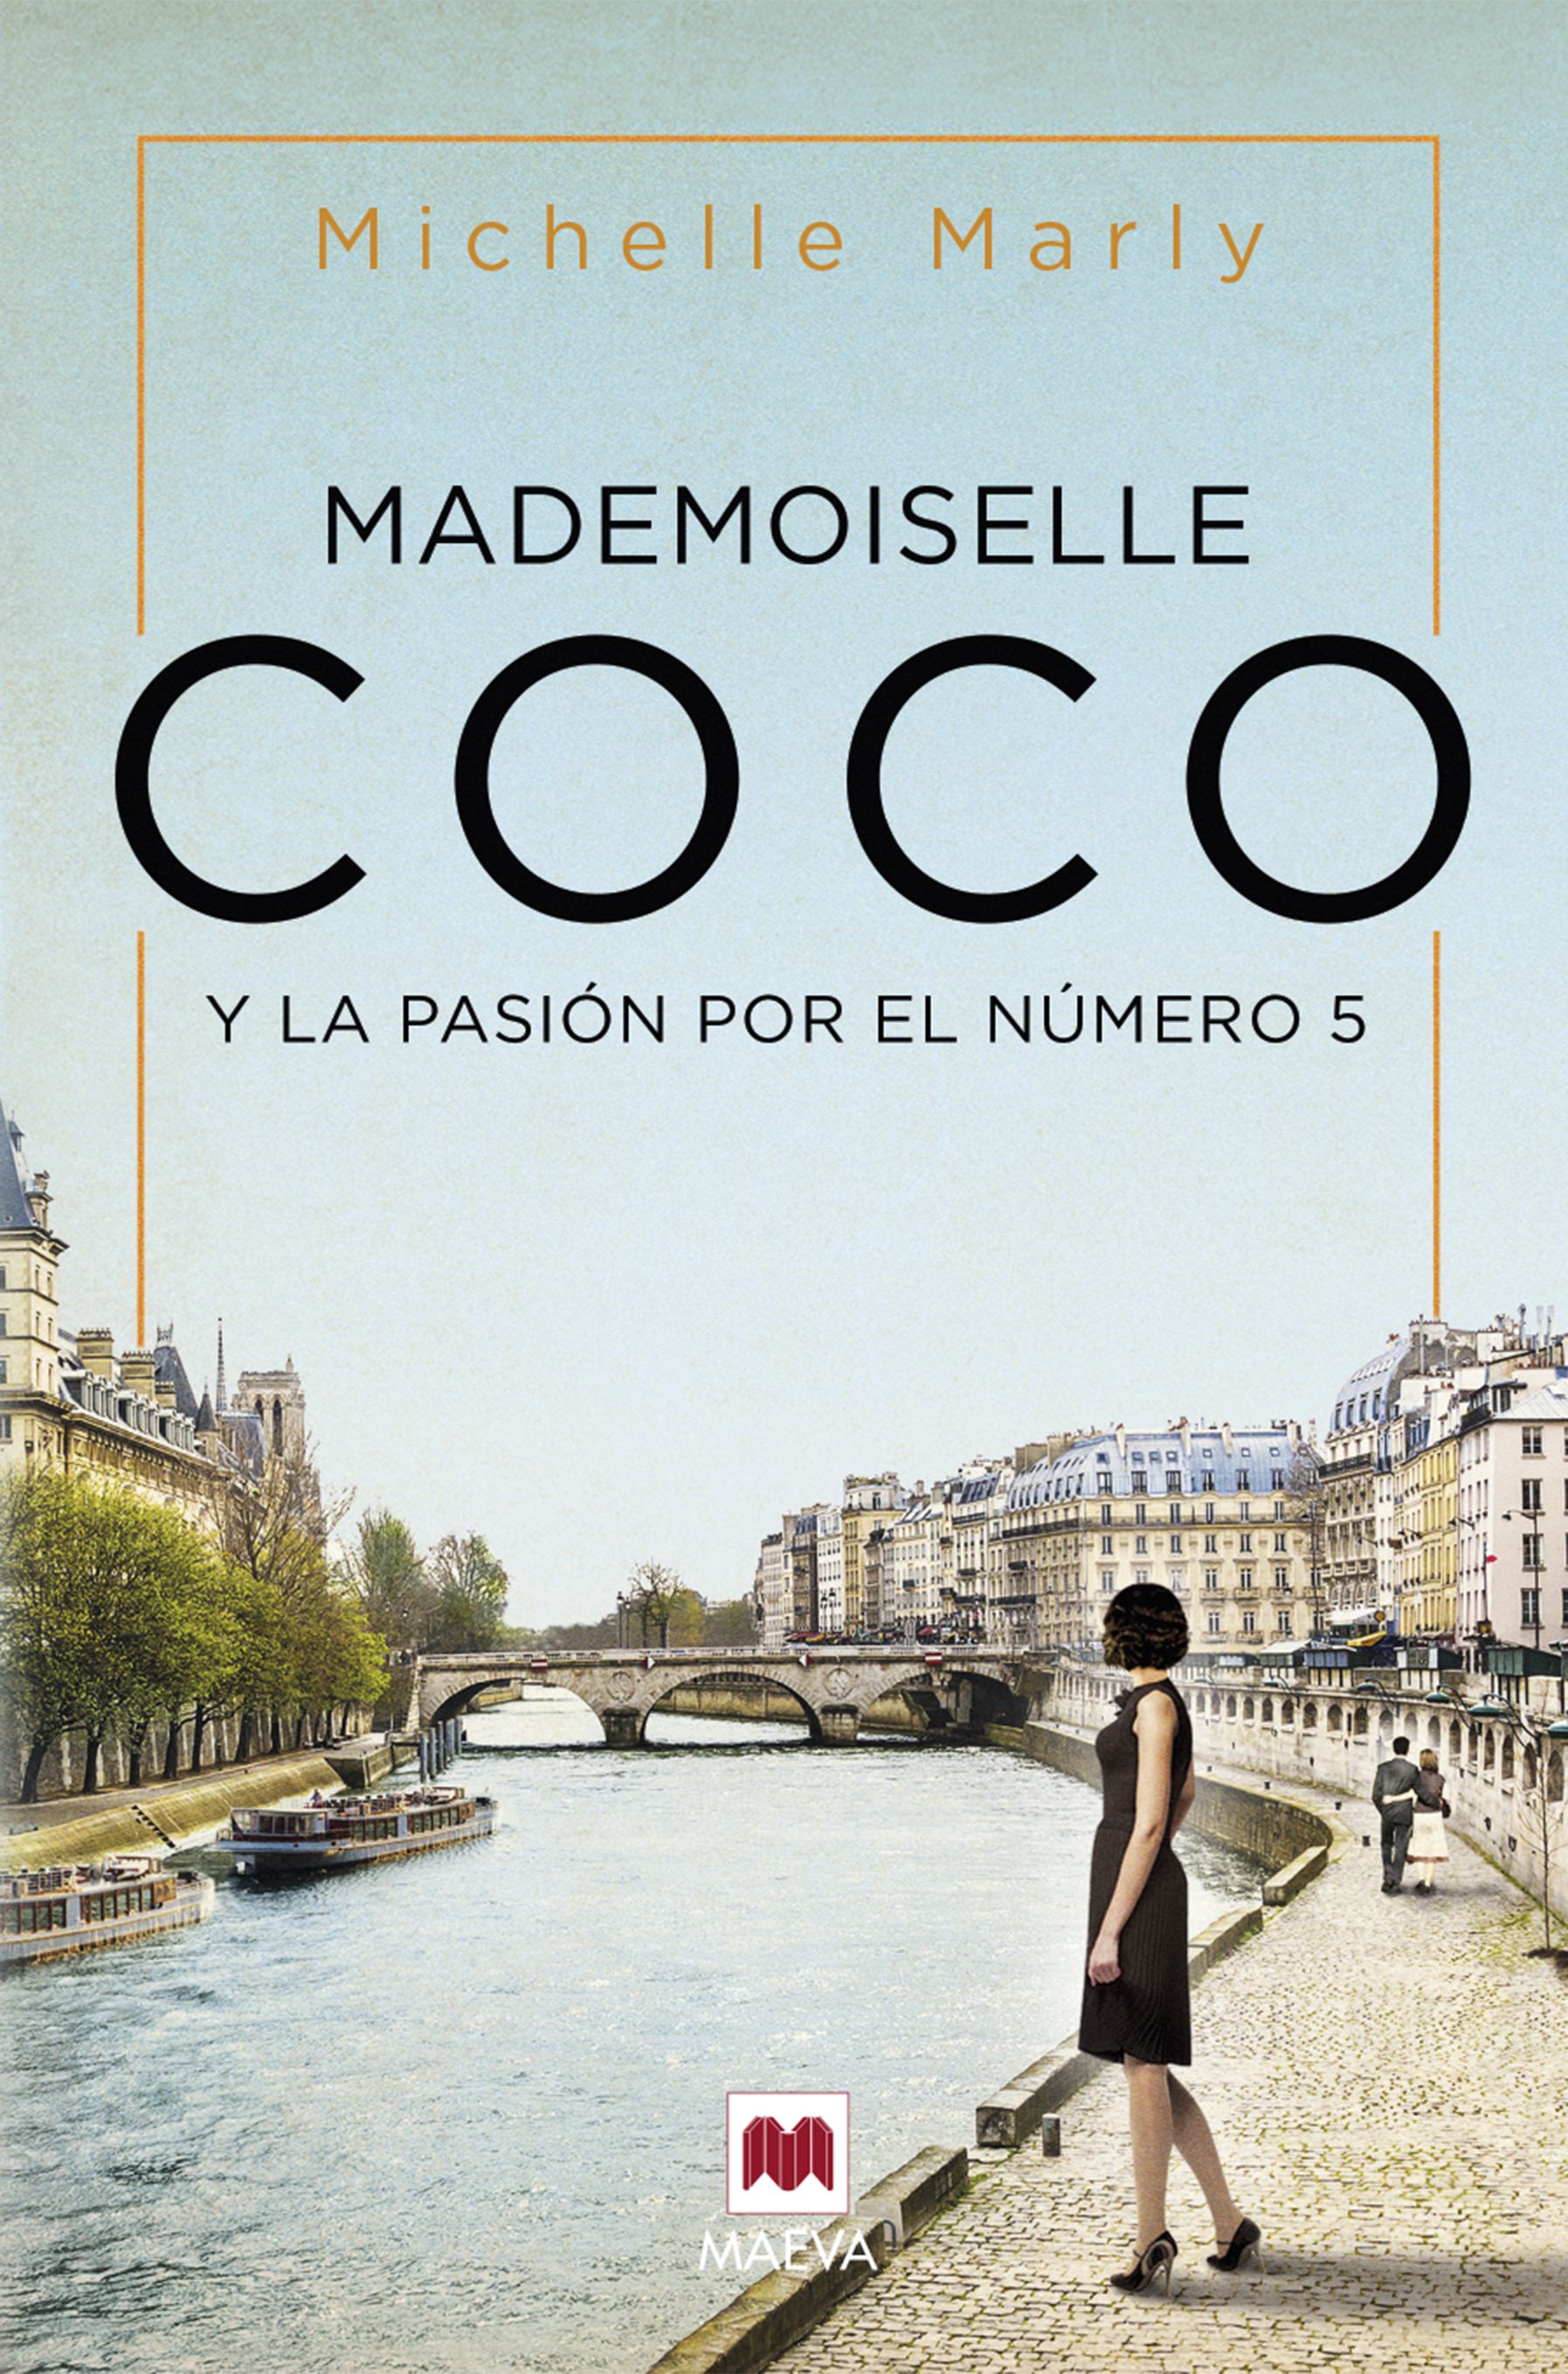 La escritora Michelle Marly descubre en su nueva novela por qué Coco Chanel eligió el número 5